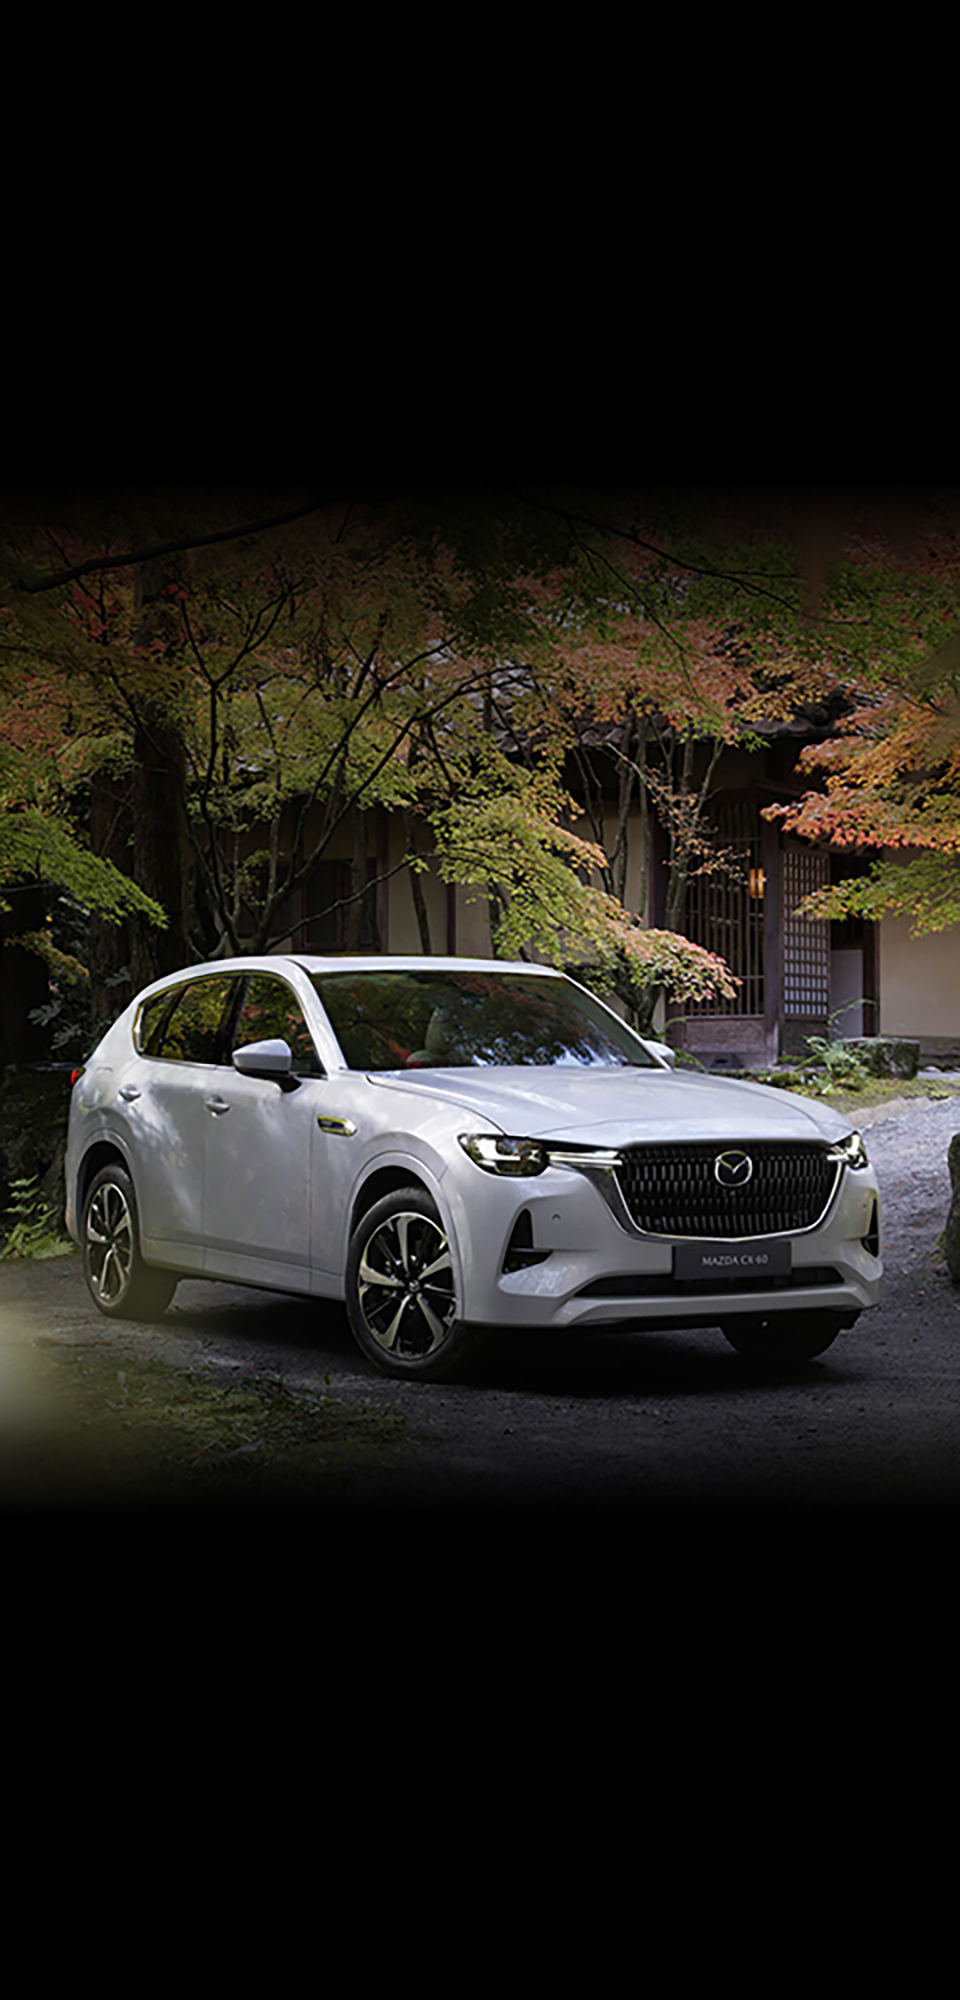 Le nouveau SUV hybride rechargeable Mazda CX-60 vu de l’avant, garé dehors, à côté d’arbres.